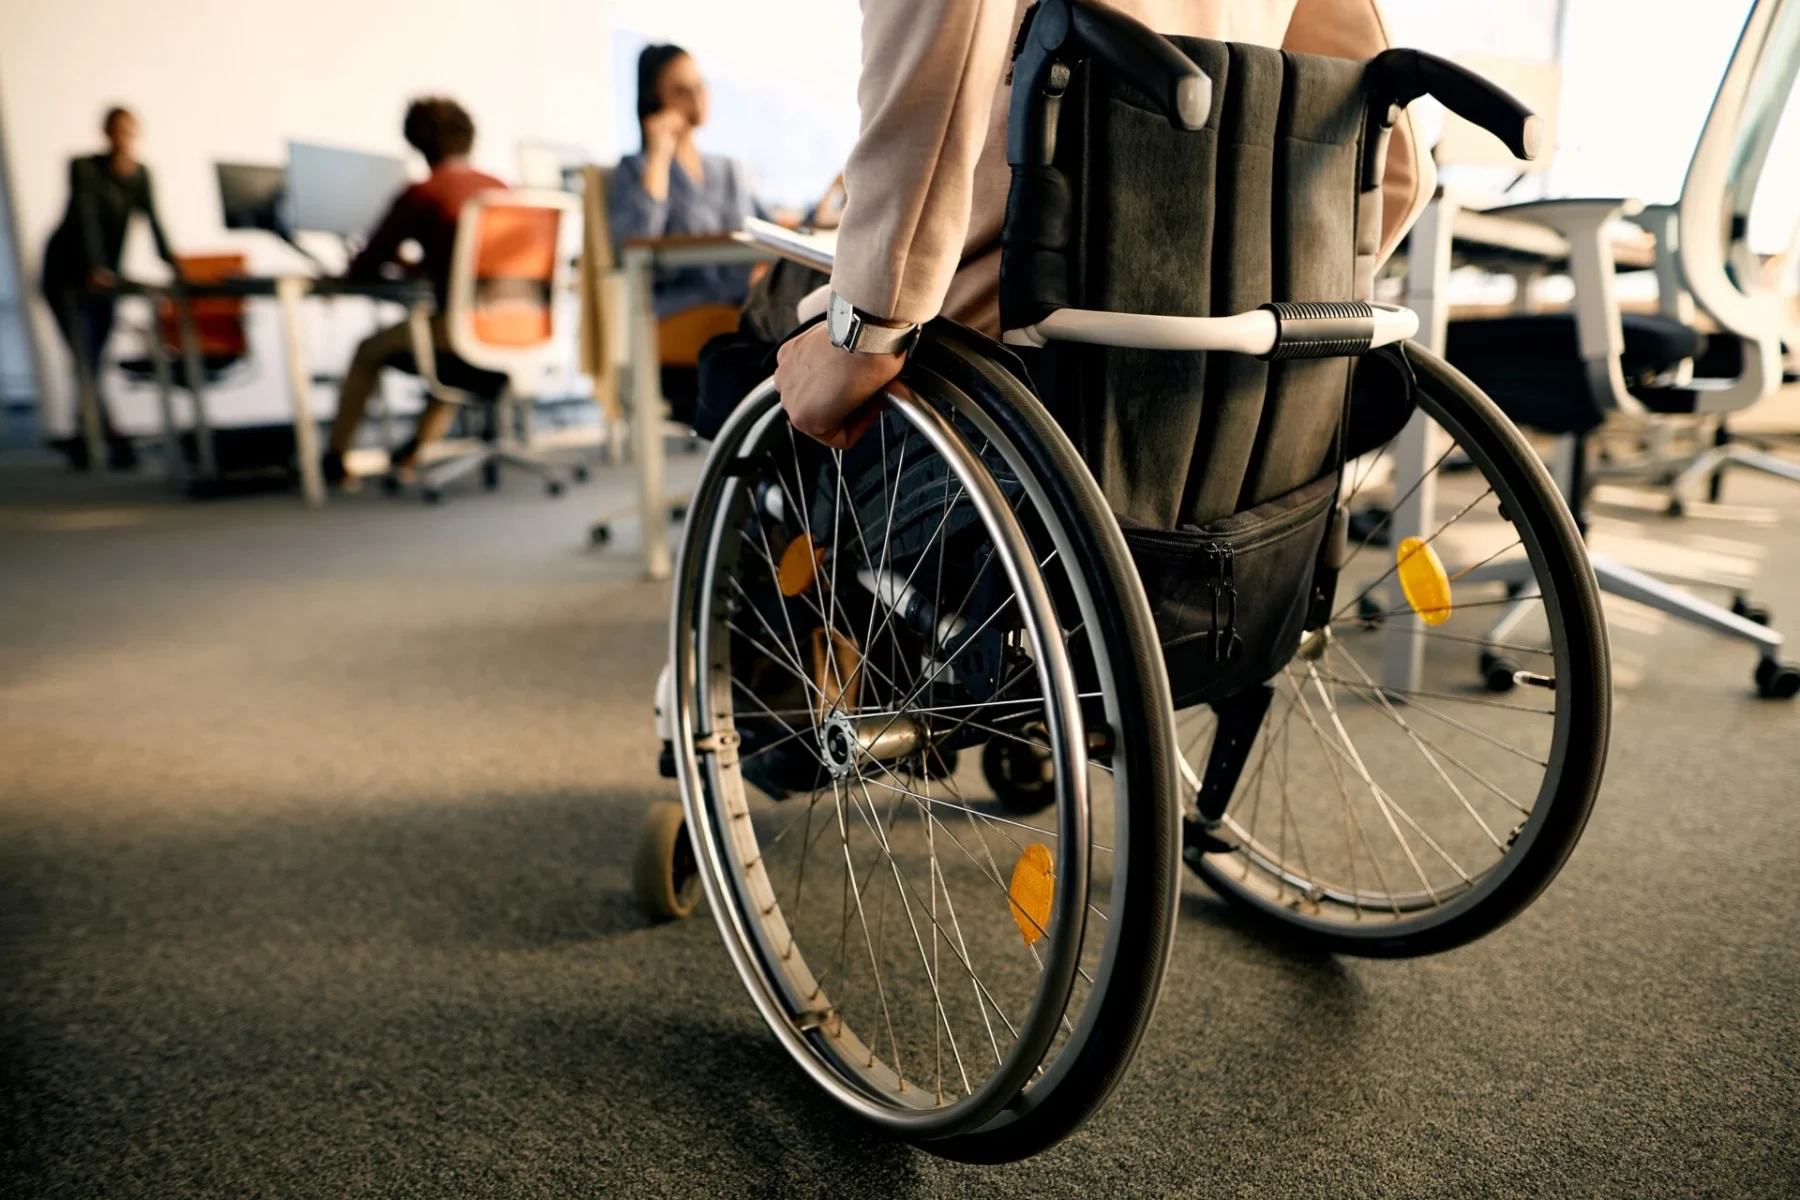 ΑΓΗΣΙΛΑΟΣ: Παράταση στο επιδοτούμενο πρόγραμμα επαγγελματικής κατάρτισης ατόμων με αναπηρία